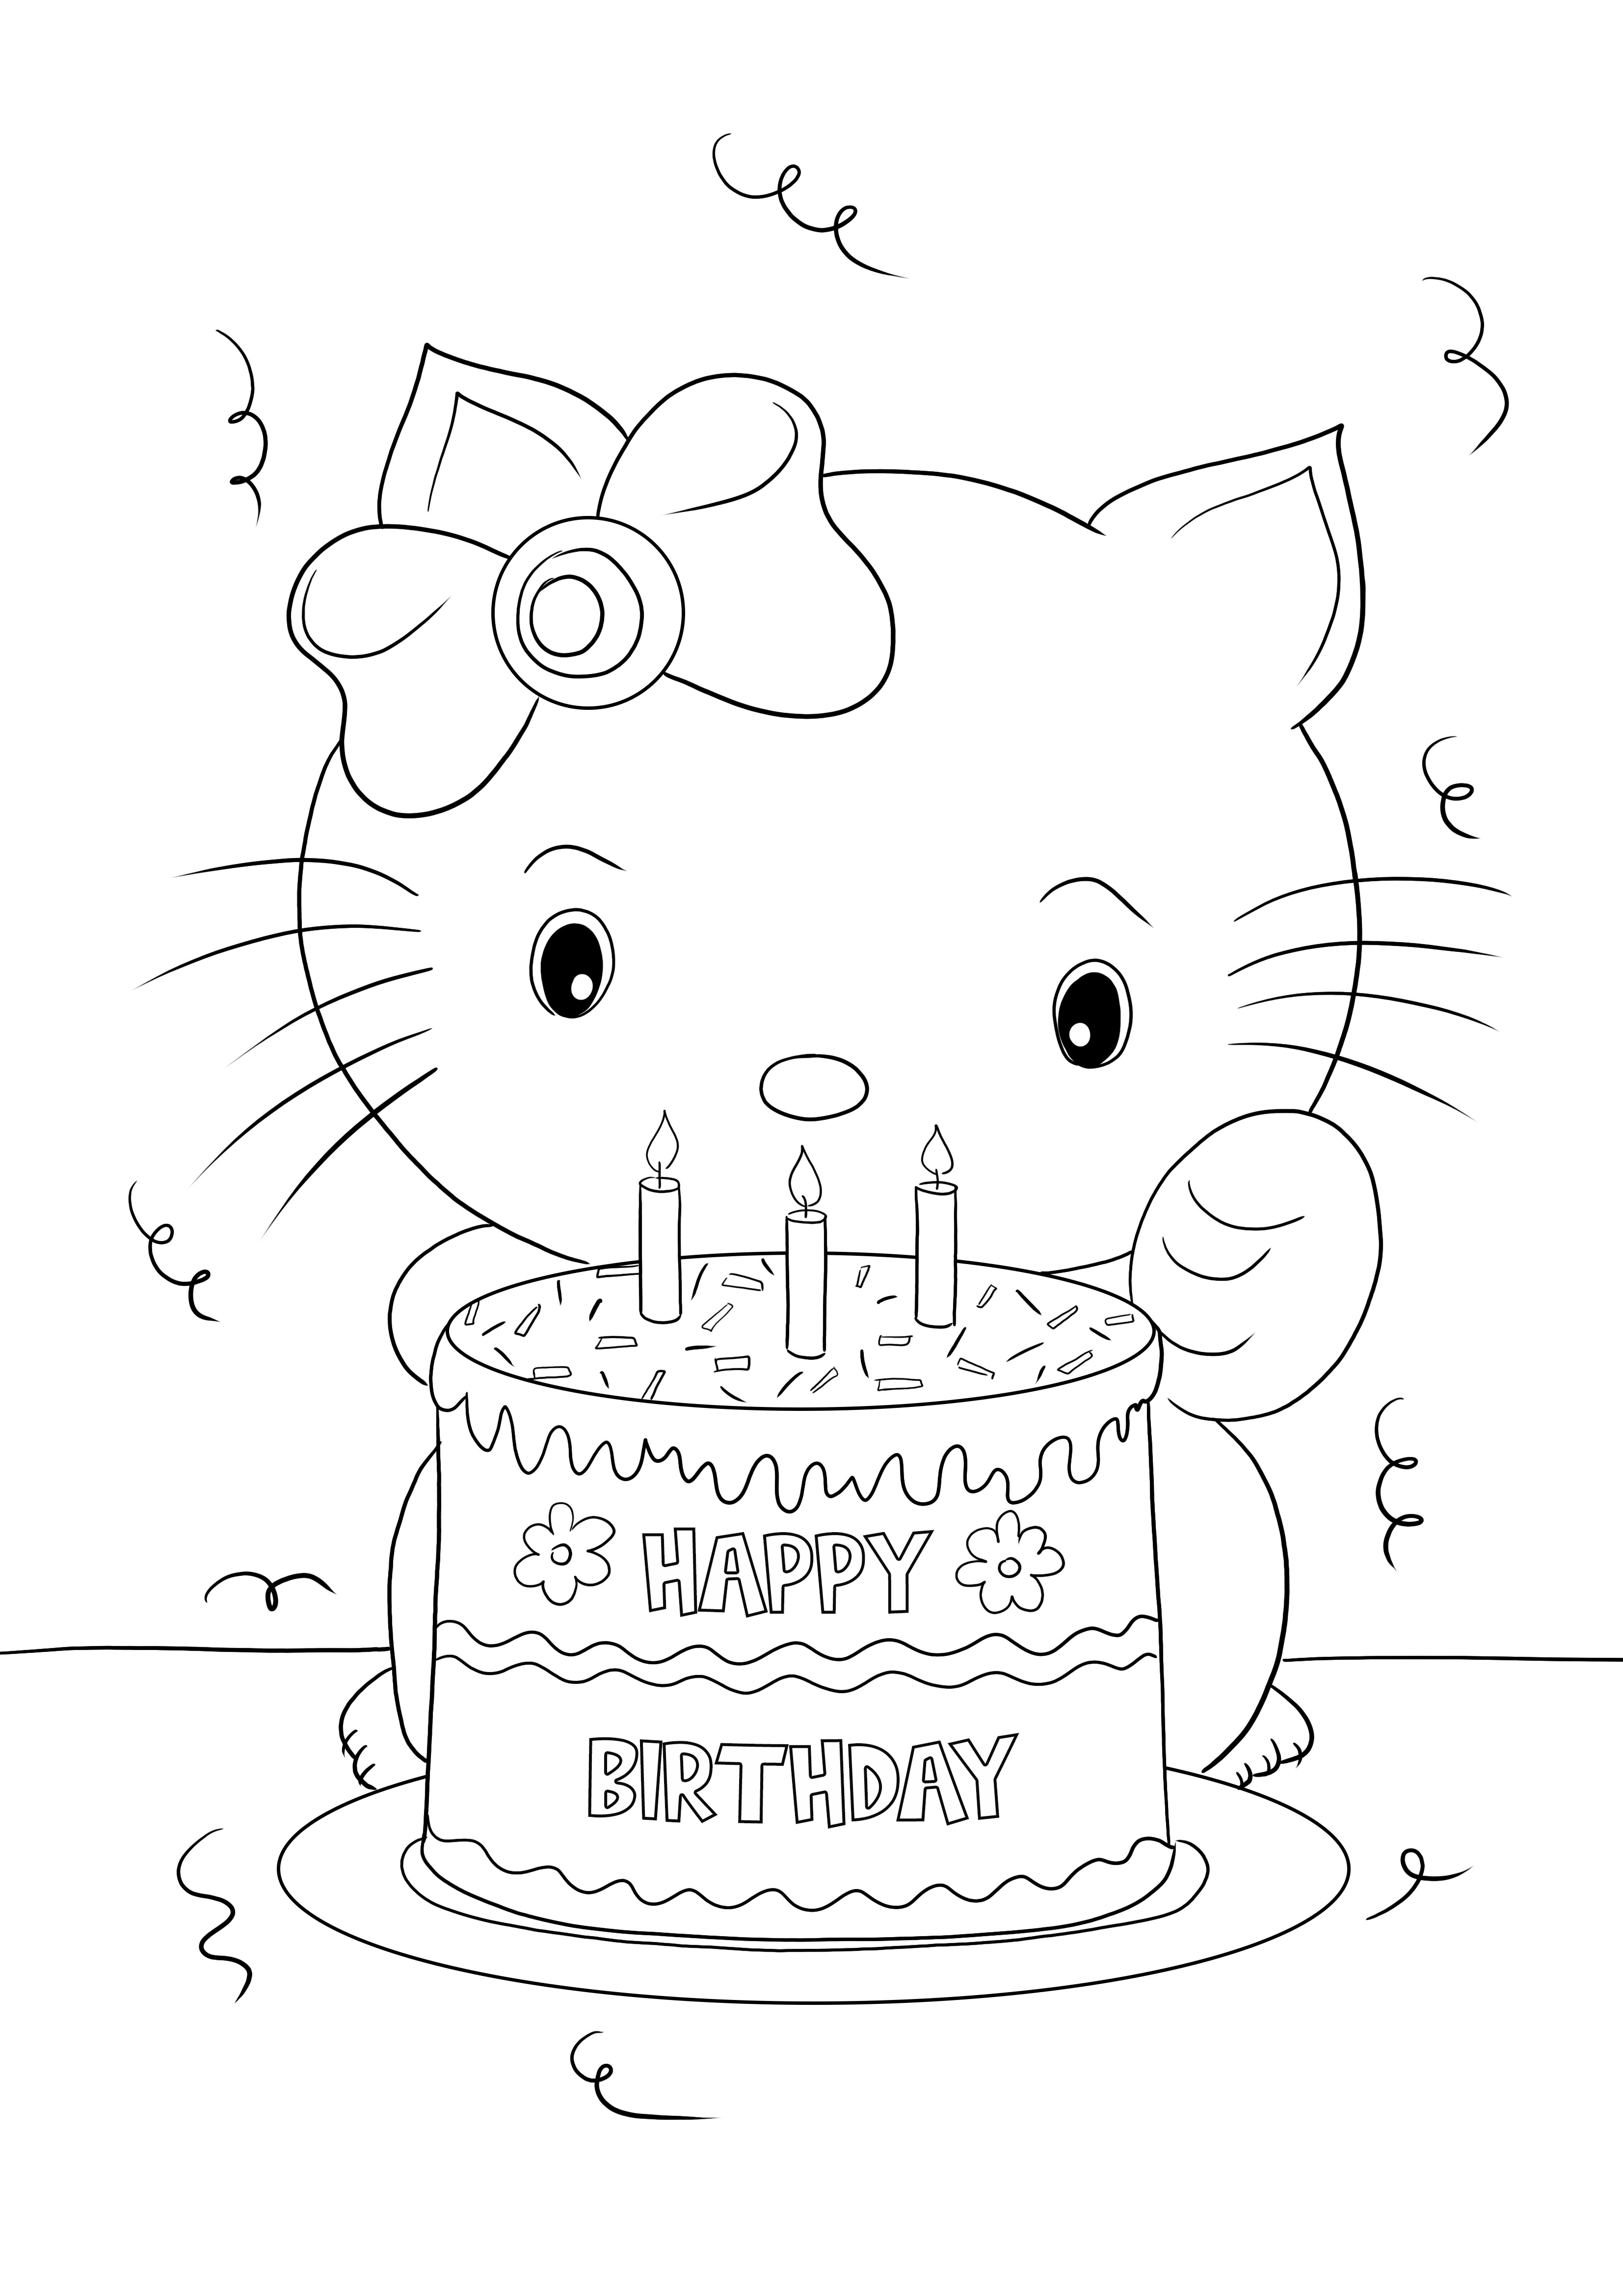 Eğlenerek boyamak ve öğrenmek için Doğum Günün Kutlu Olsun Hello Kitty'nin ücretsiz yazdırılabilirliği